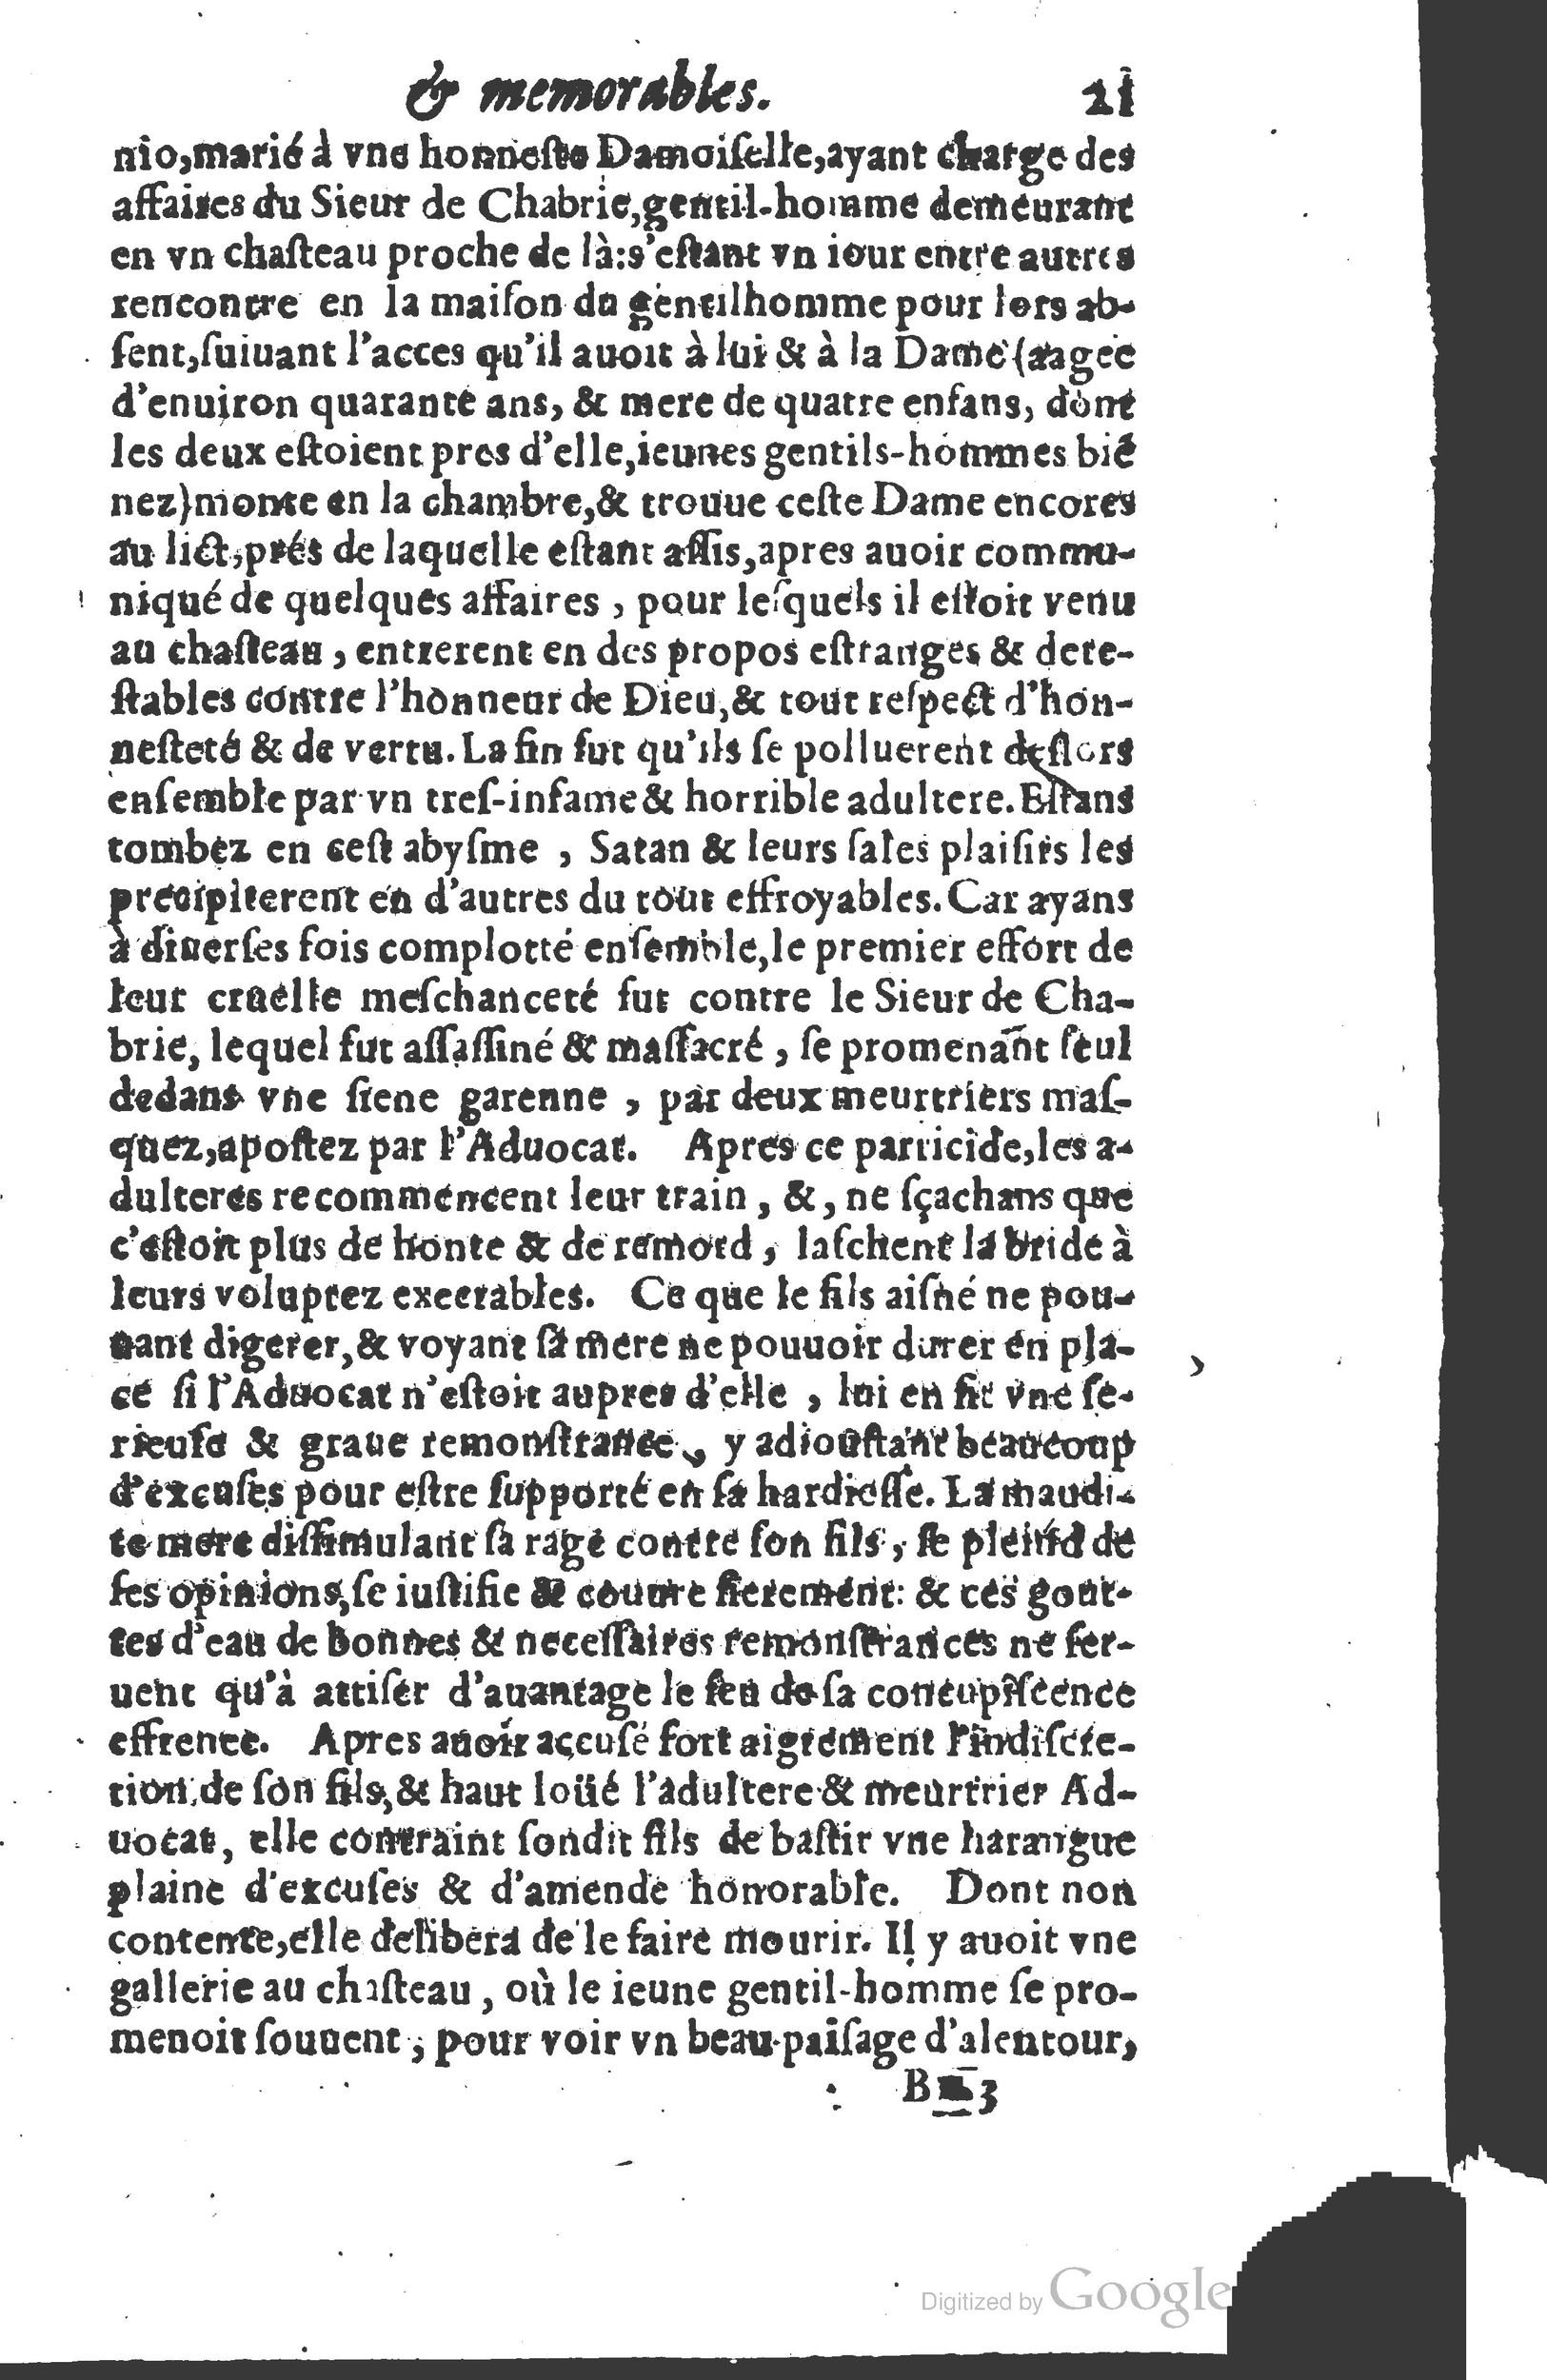 1610 Trésor d’histoires admirables et mémorables de nostre temps Marceau Princeton_Page_0042.jpg